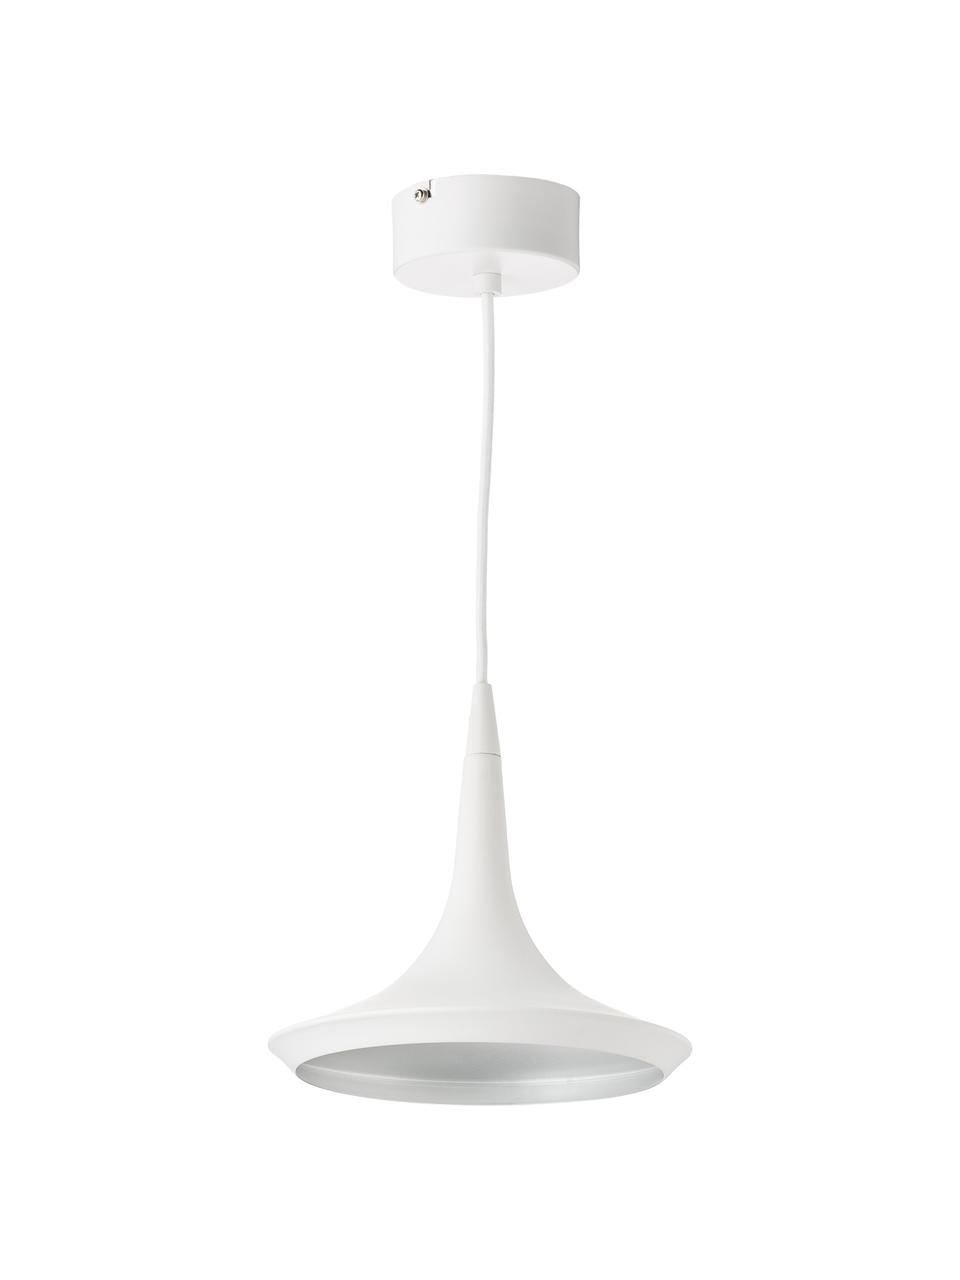 Malé závěsné LED svítidlo Swing, Bílá, krémová